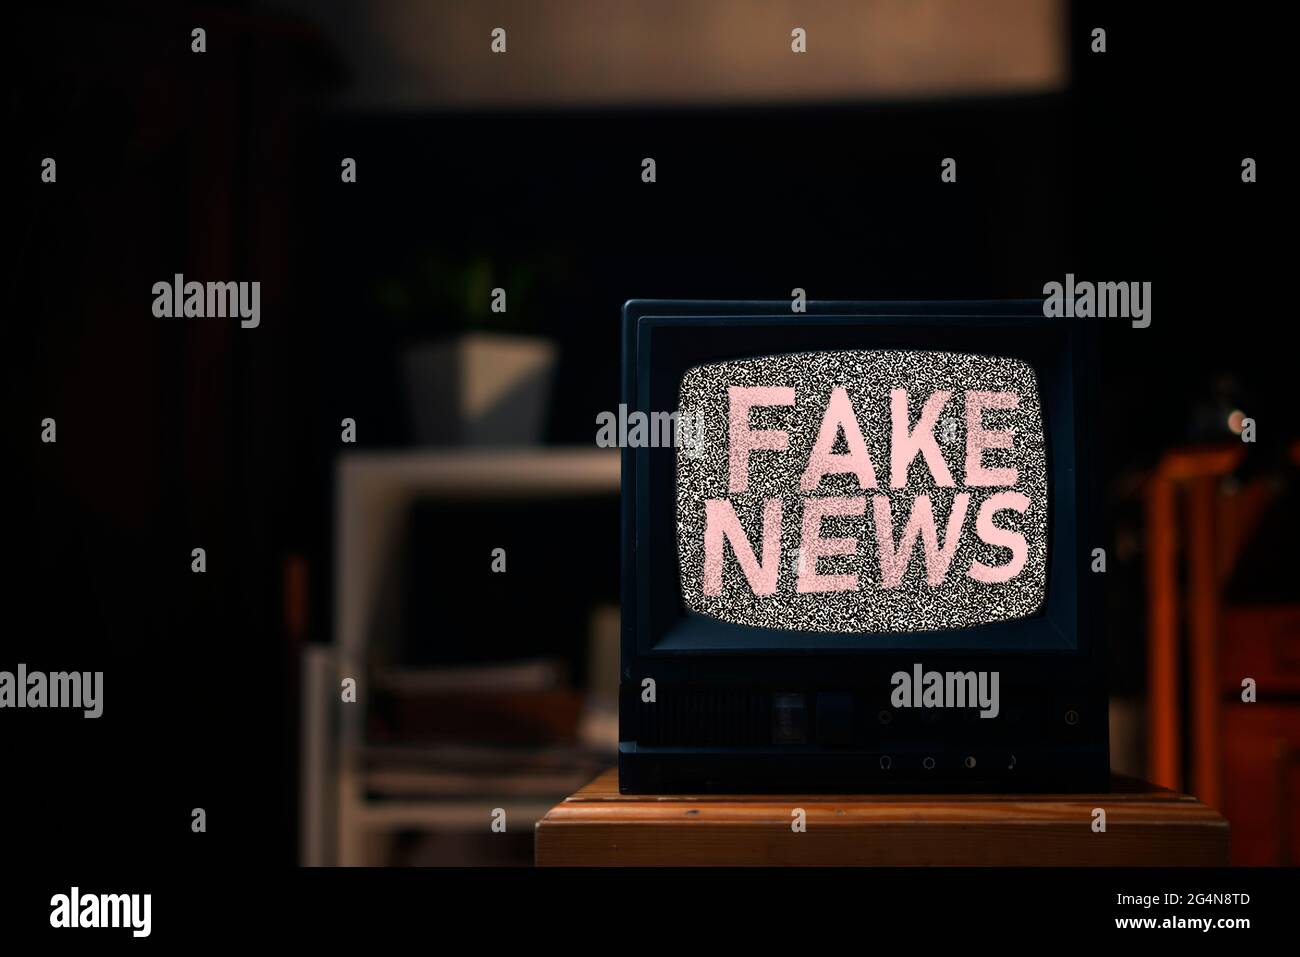 le vieux téléviseur d'époque avec bruit gris à l'écran avec fausses nouvelles texte superposé, debout sur l'étagère à la maison Banque D'Images